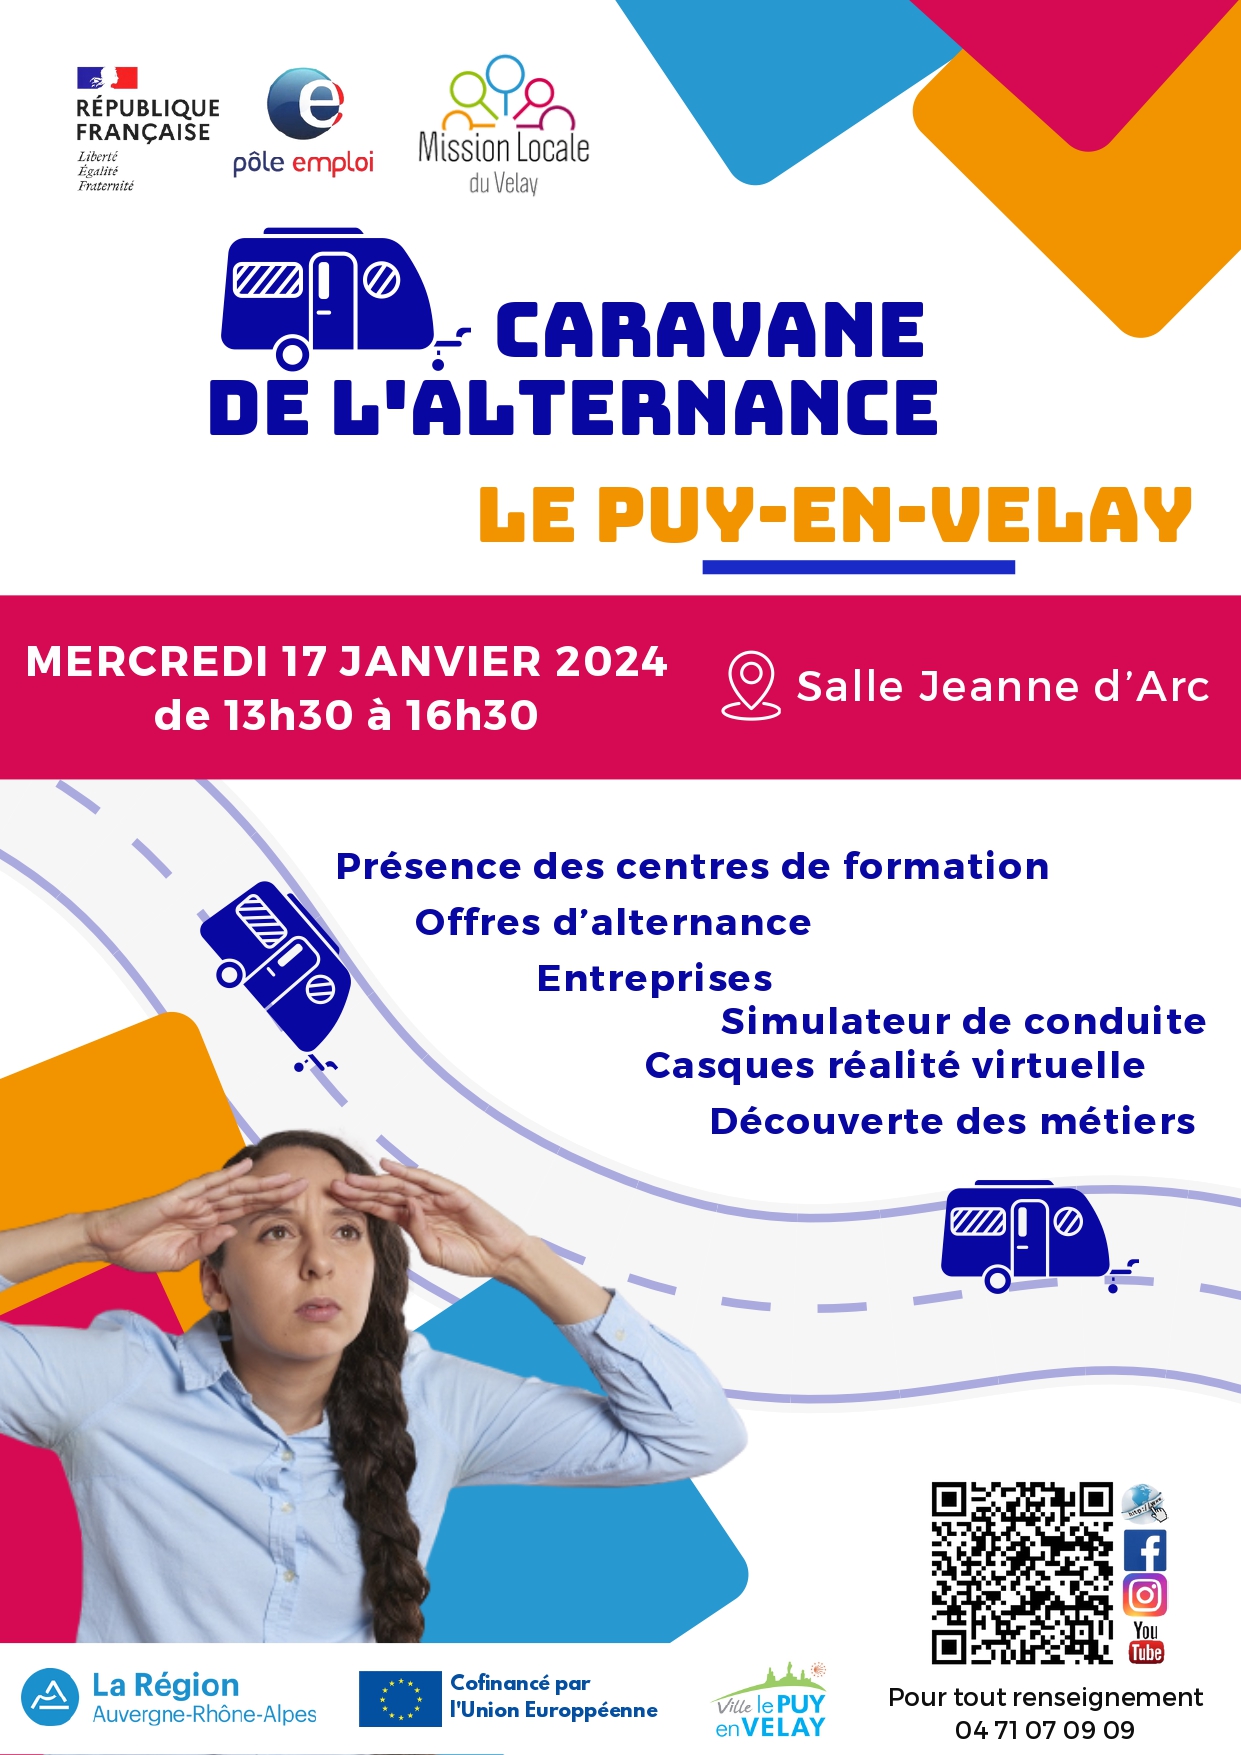 You are currently viewing Caravane de l’Alternance le mercredi 17 janvier 2024 au Puy en Velay